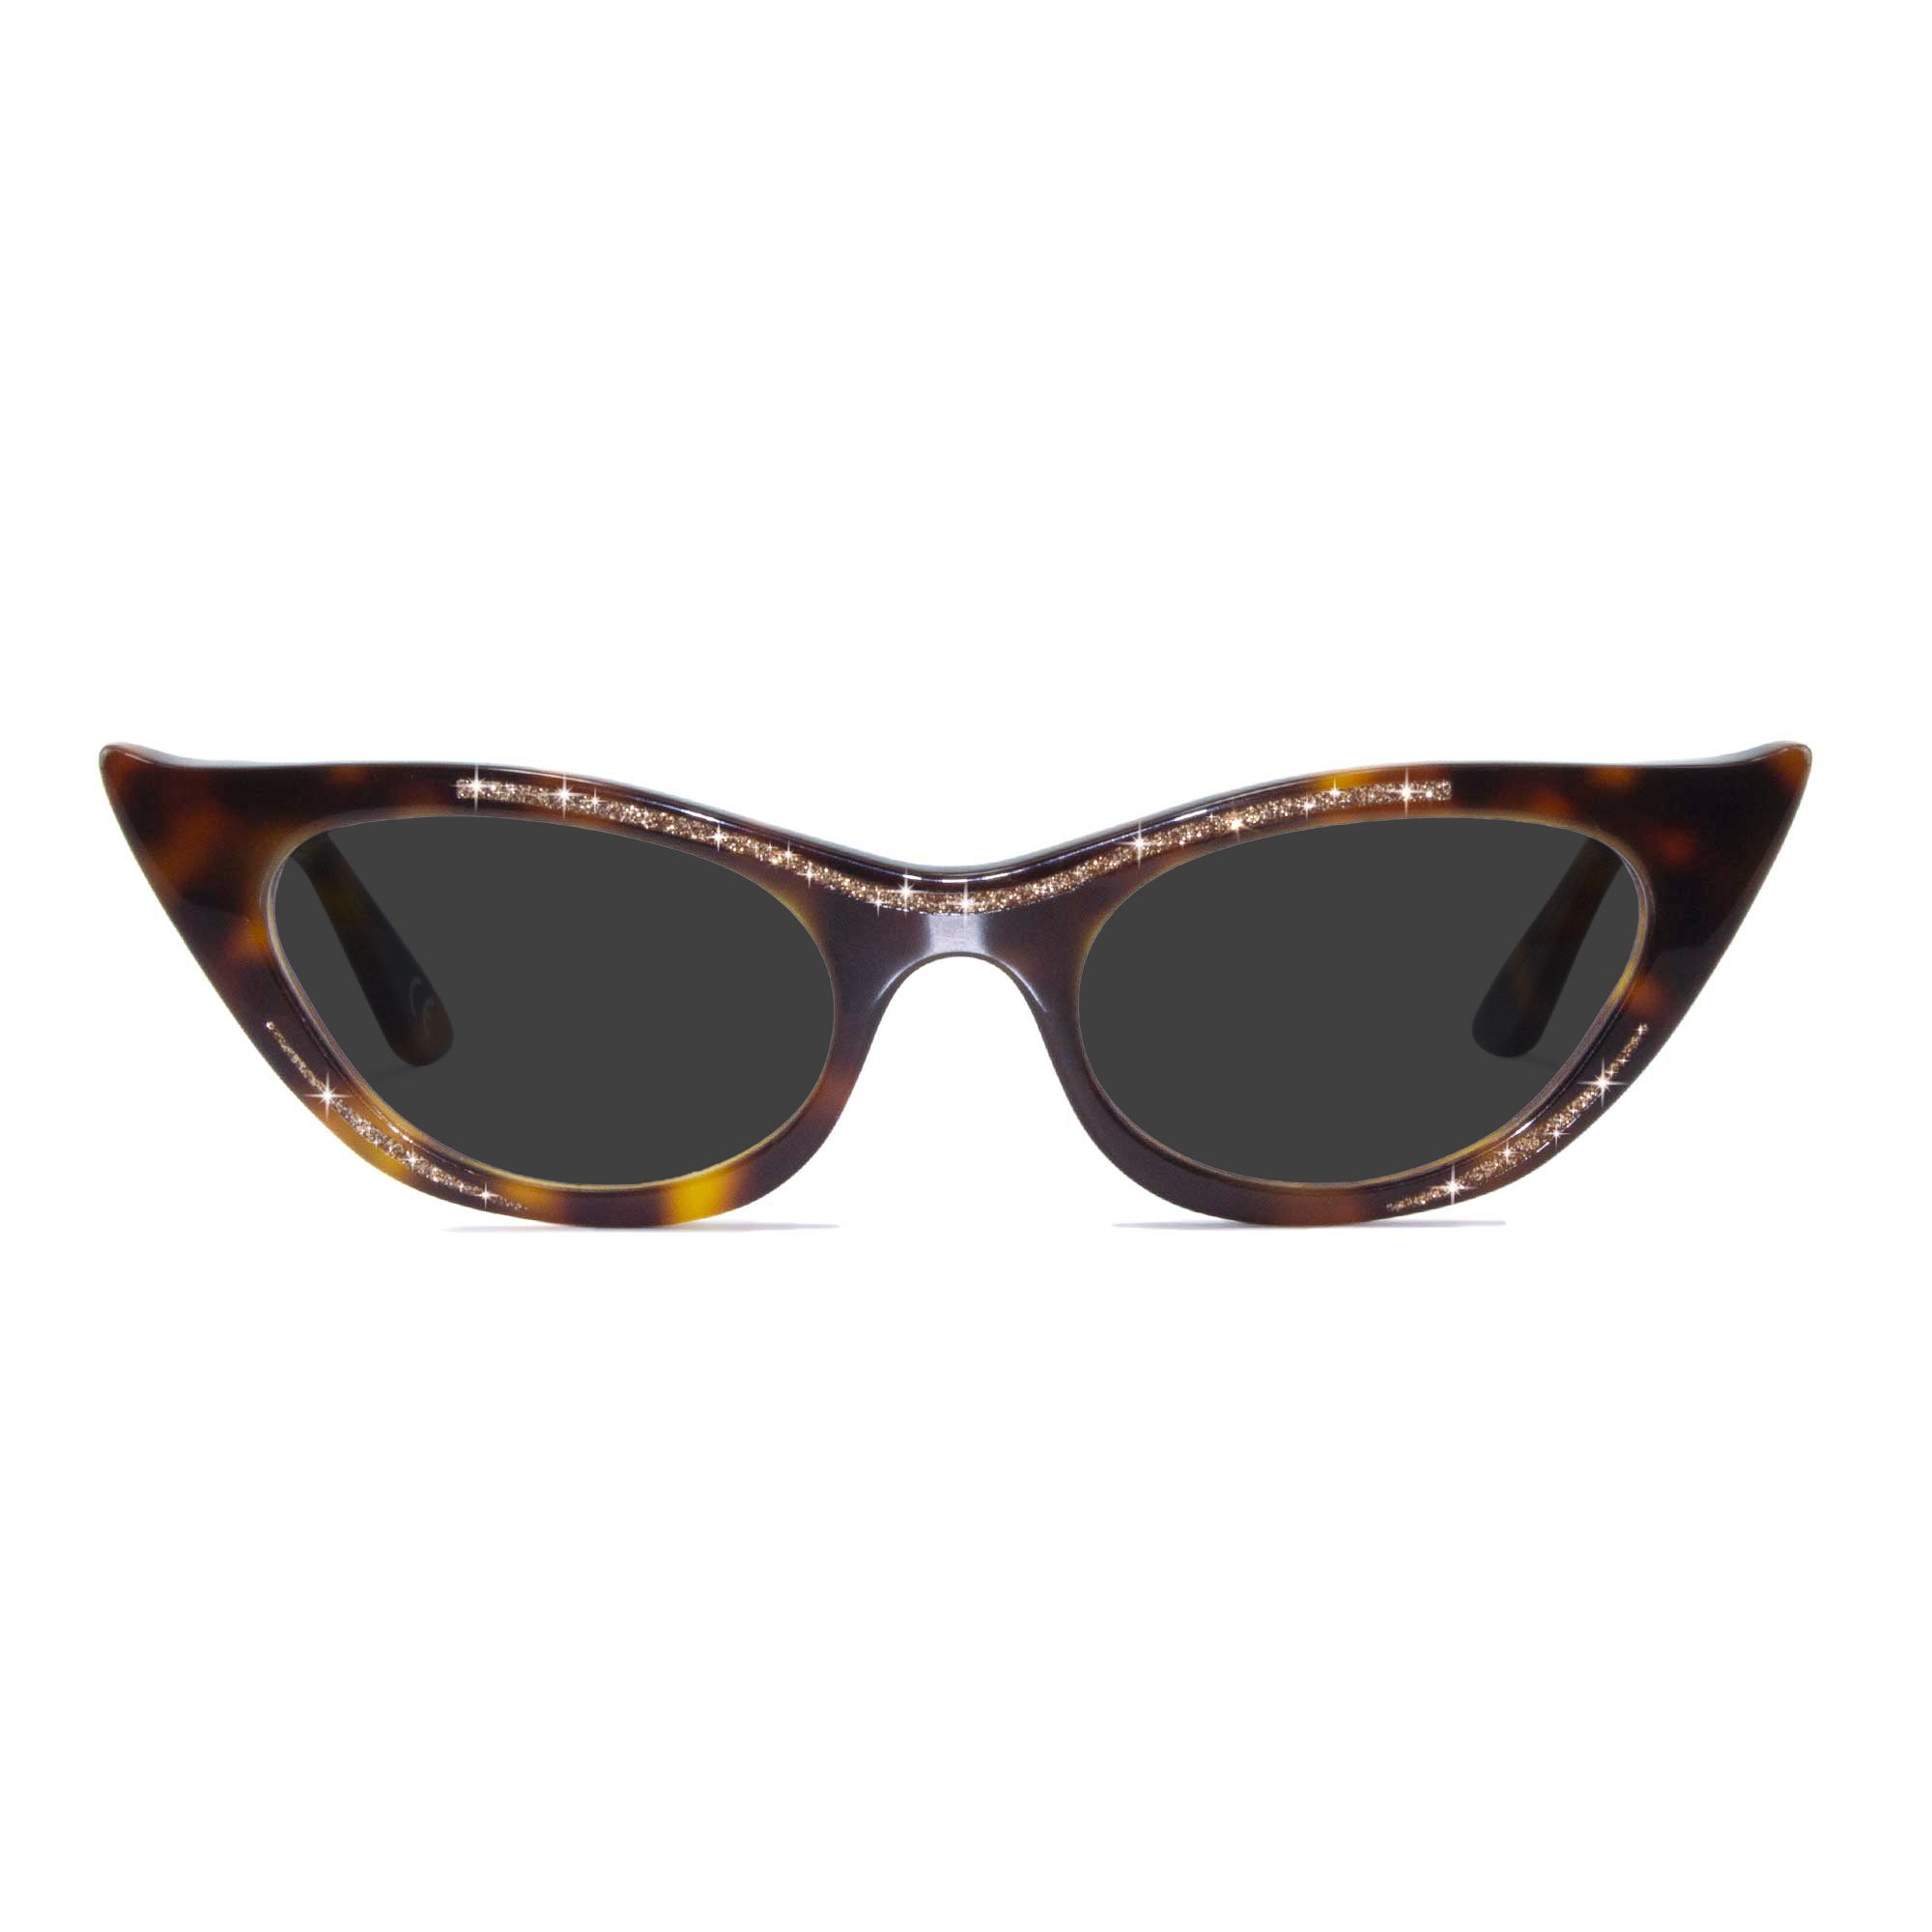 tortoiseshell winged cat eye sunglasses